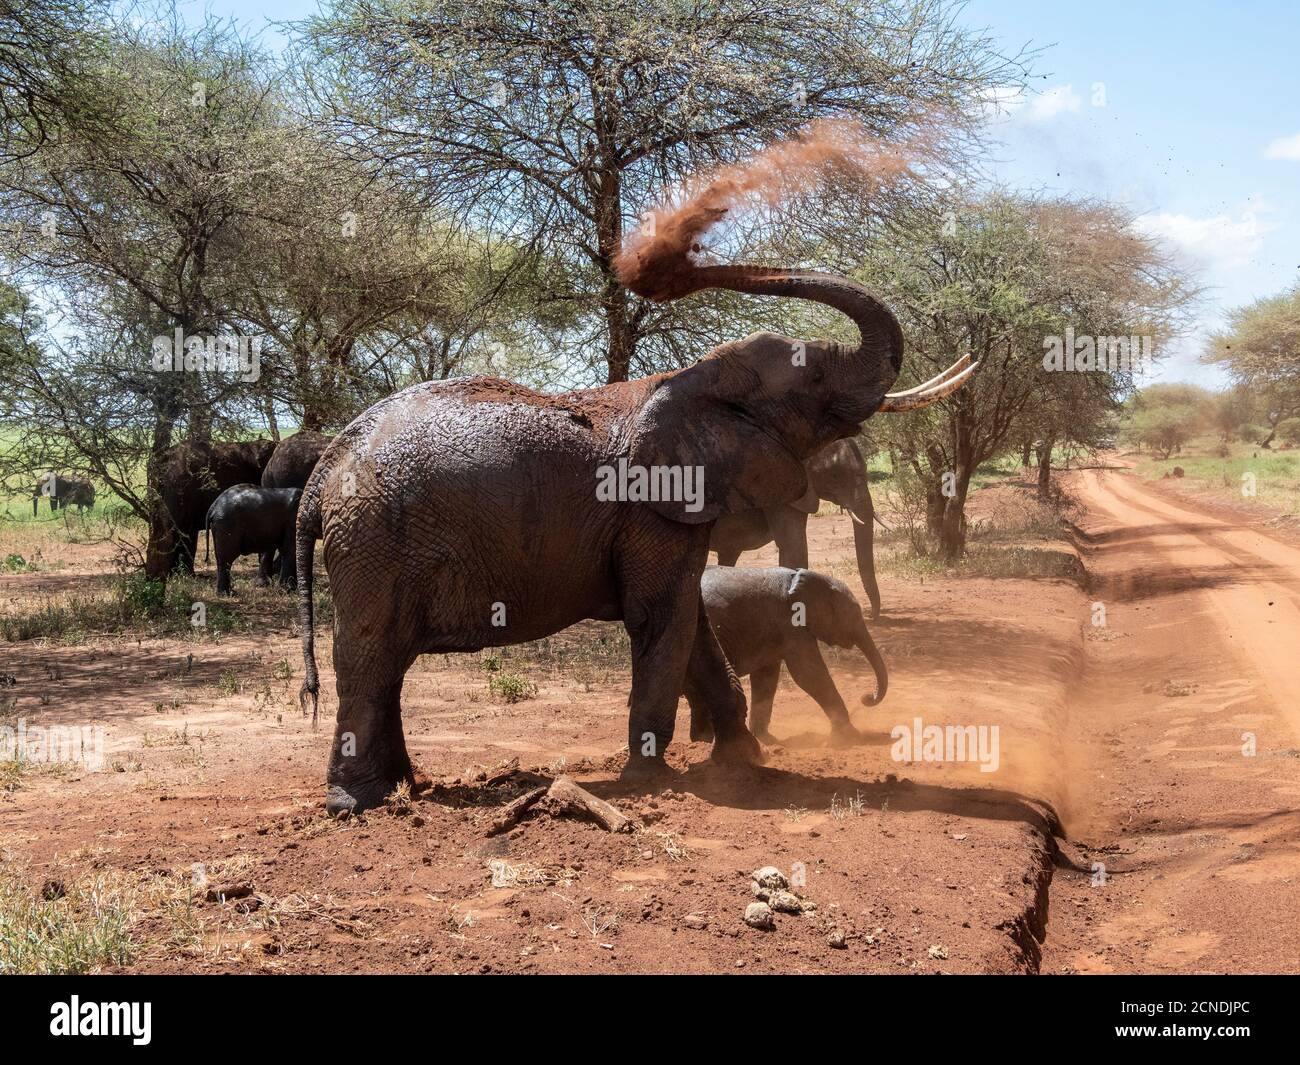 Les éléphants de brousse africains (Loxodonta africana), prenant un bain de poussière, Parc national de Tarangire, Tanzanie, Afrique de l'est, Afrique Banque D'Images